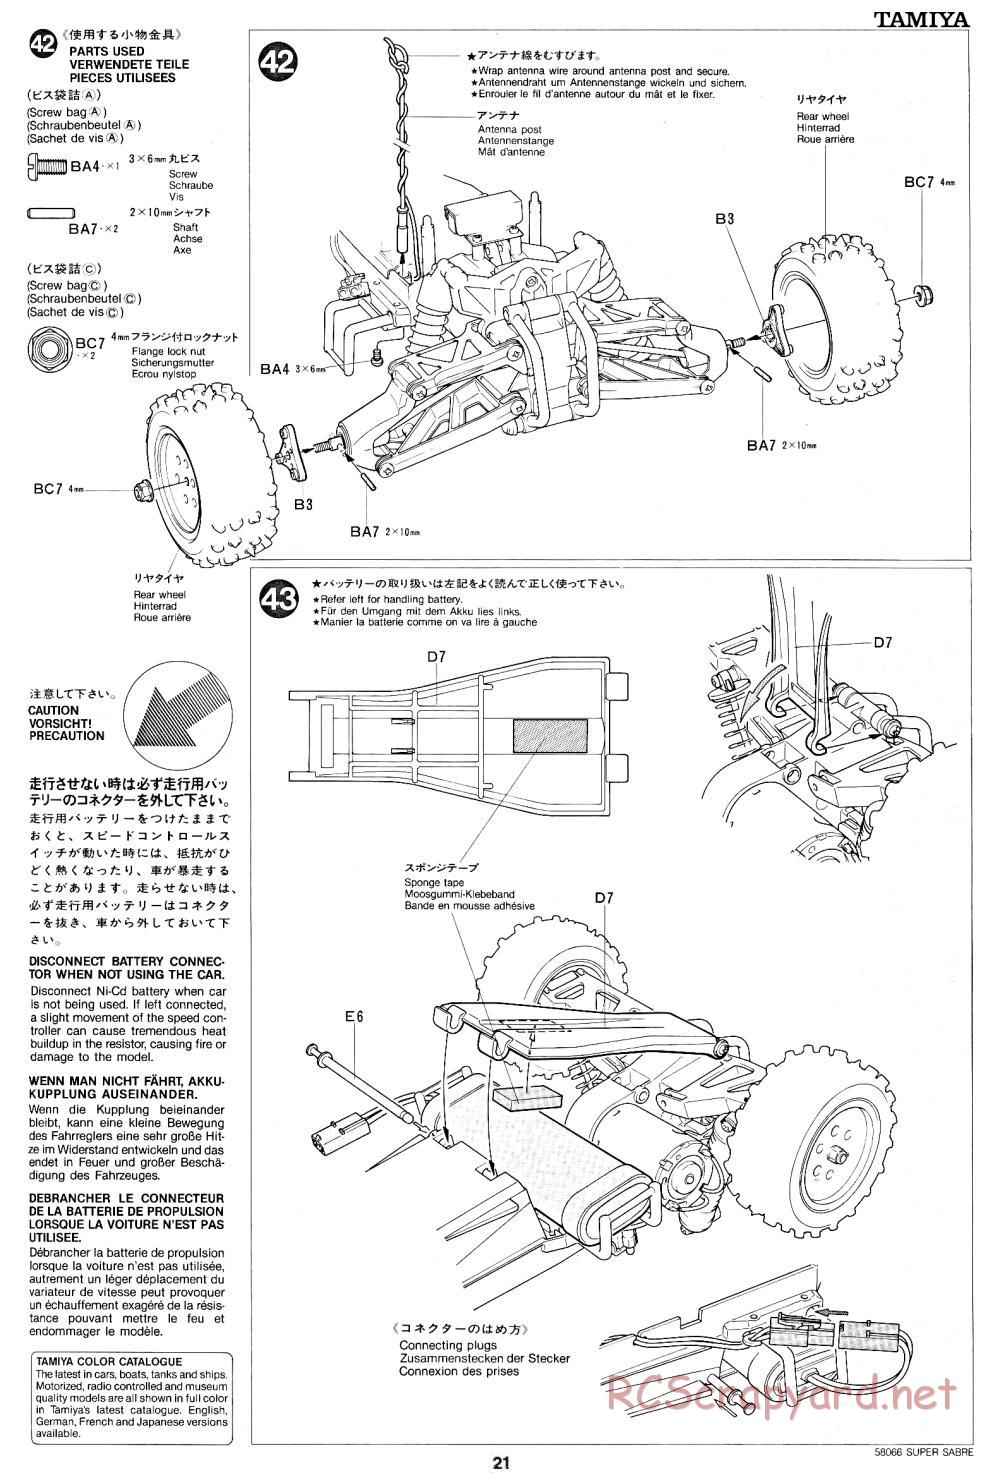 Tamiya - Super Sabre - 58066 - Manual - Page 21